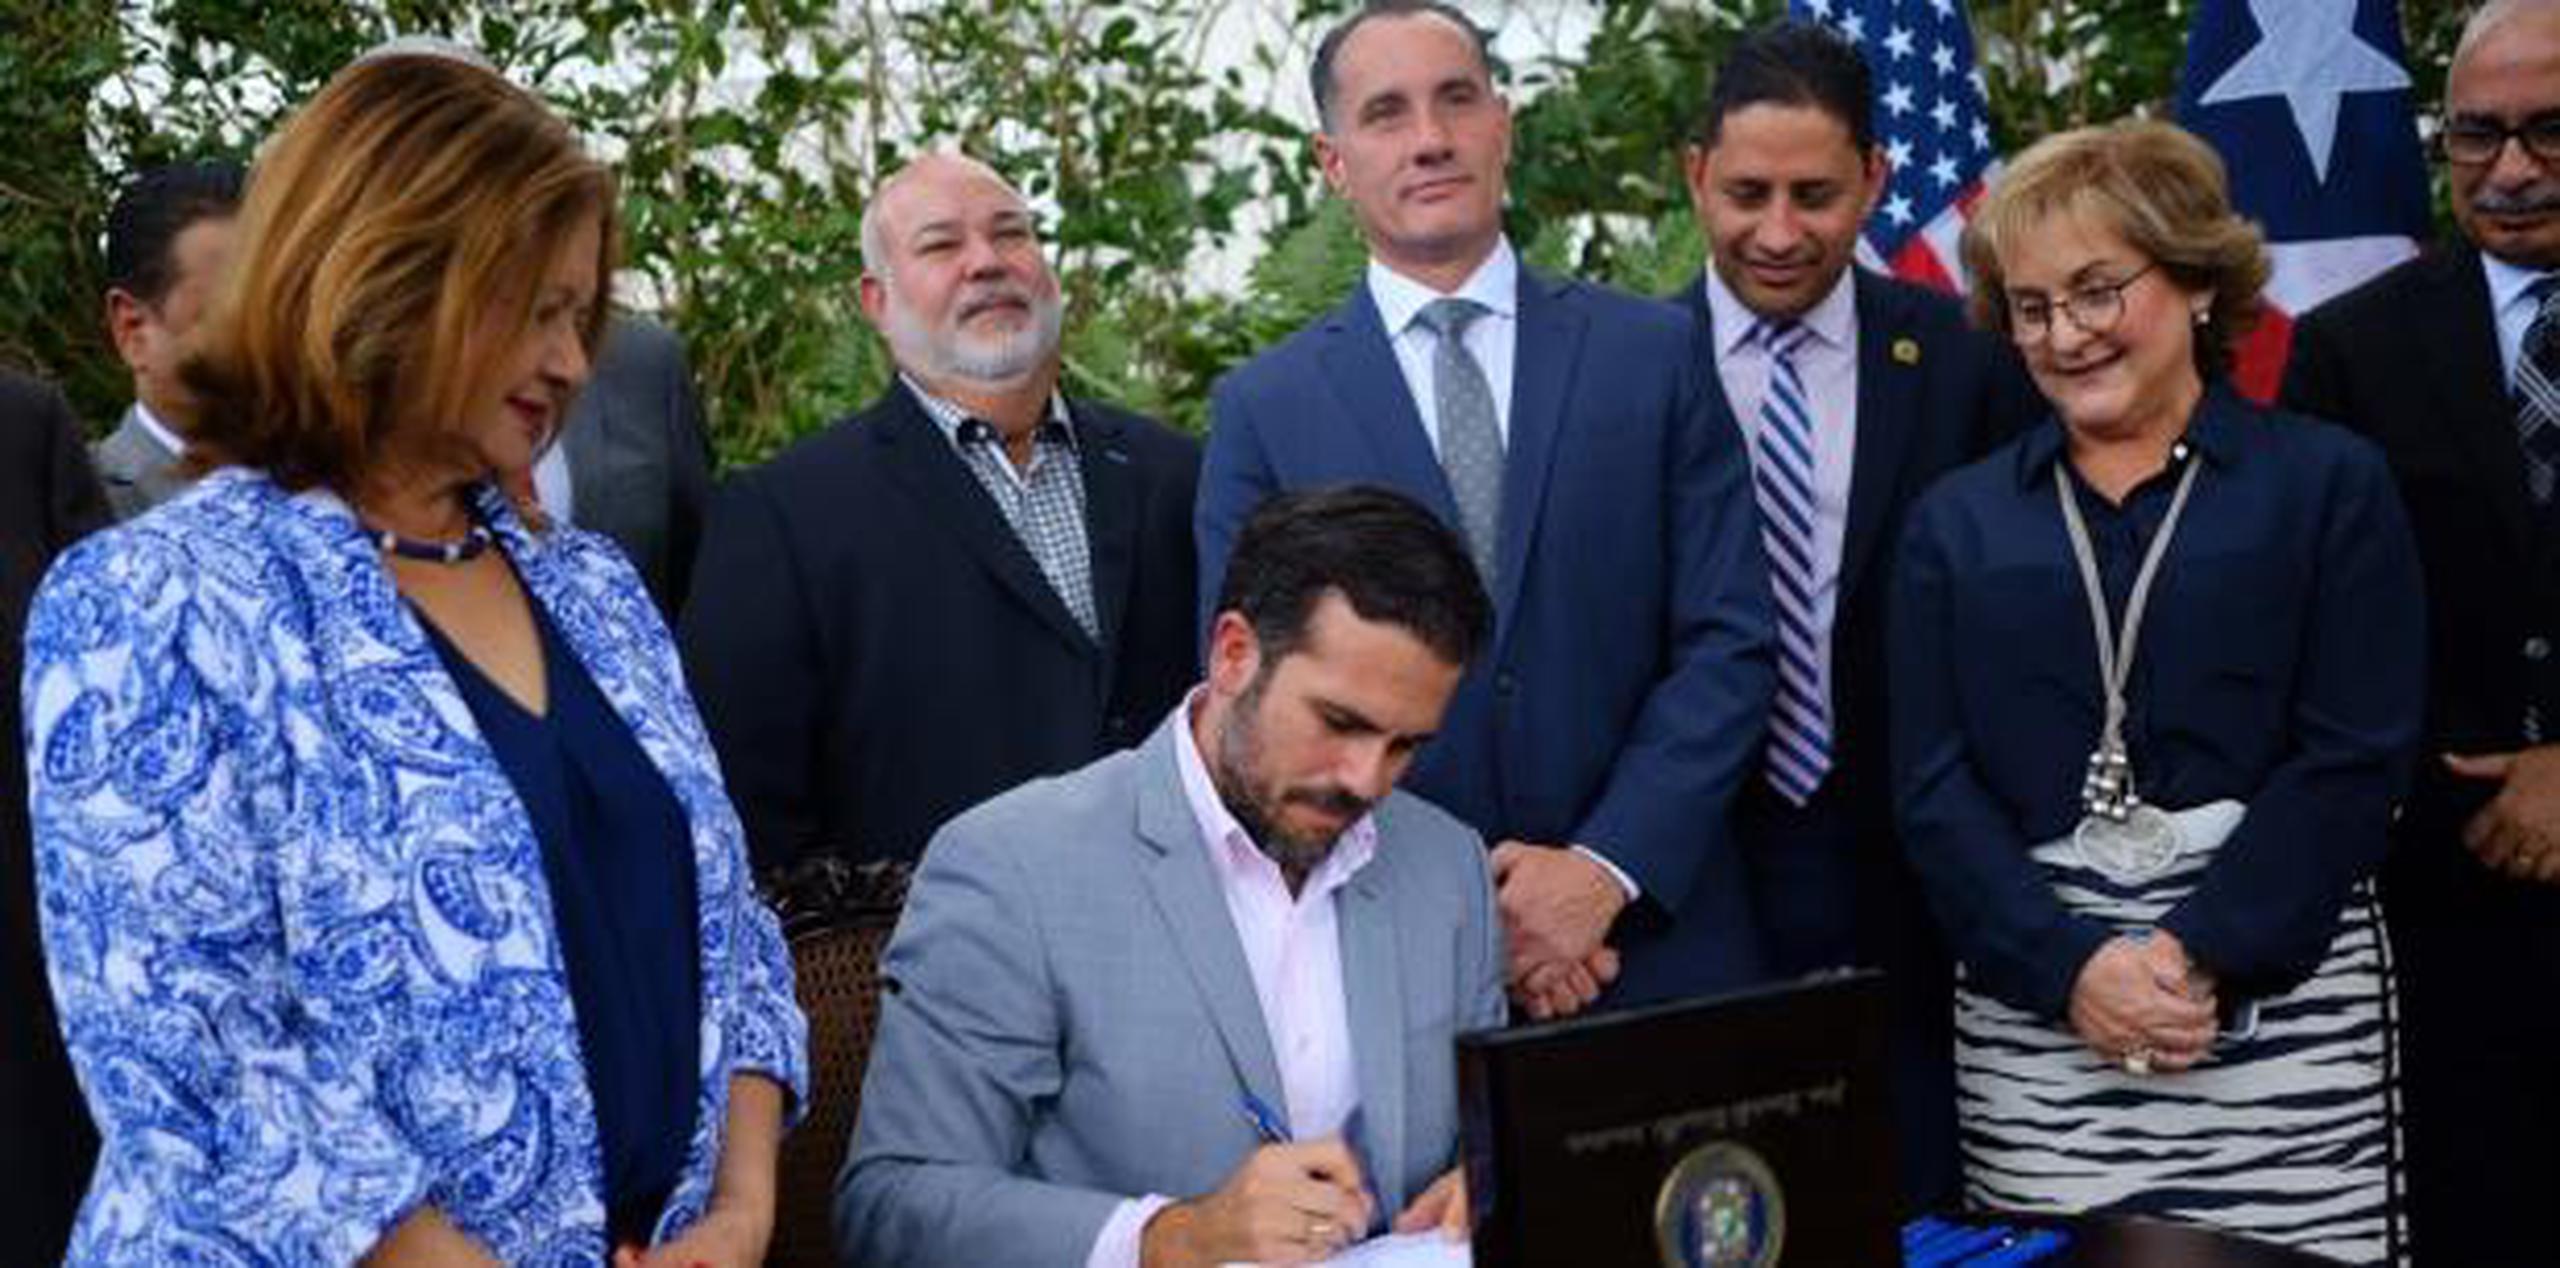 El gobernador resaltó “los pilares principales” de la misma, como el hecho de que la reforma “se trata de ahorrarle sobre $2,000 millones al bolsillo del puertorriqueño”. (xavier.araujo@gfrmedia.com)